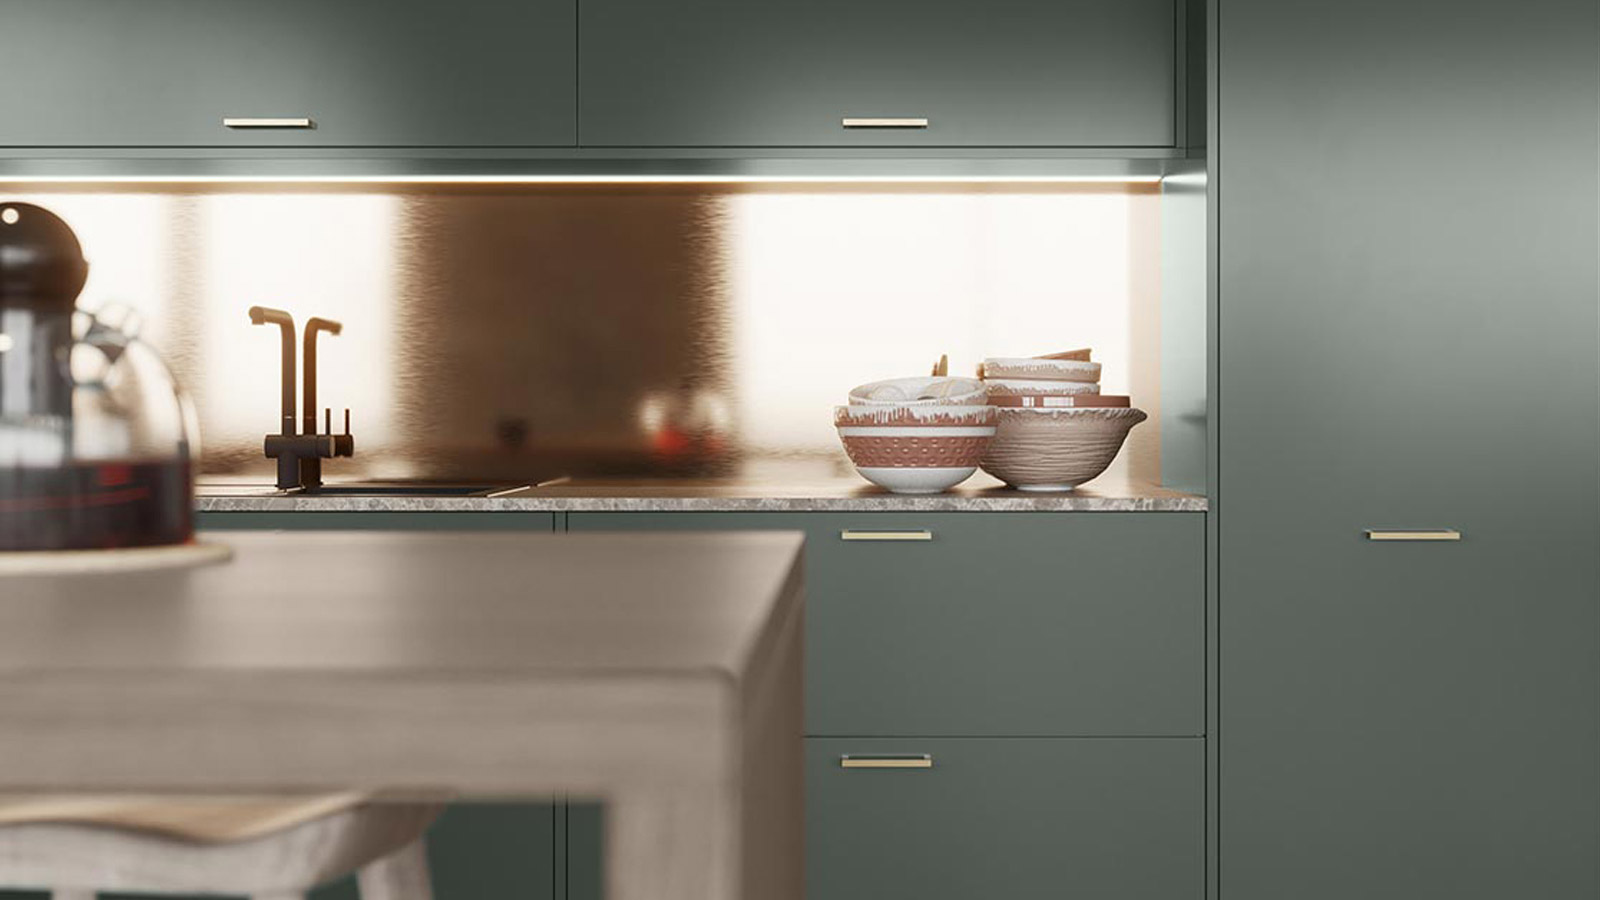 A Sutton Heather kitchen range with t-bar handles and a bronze backsplash